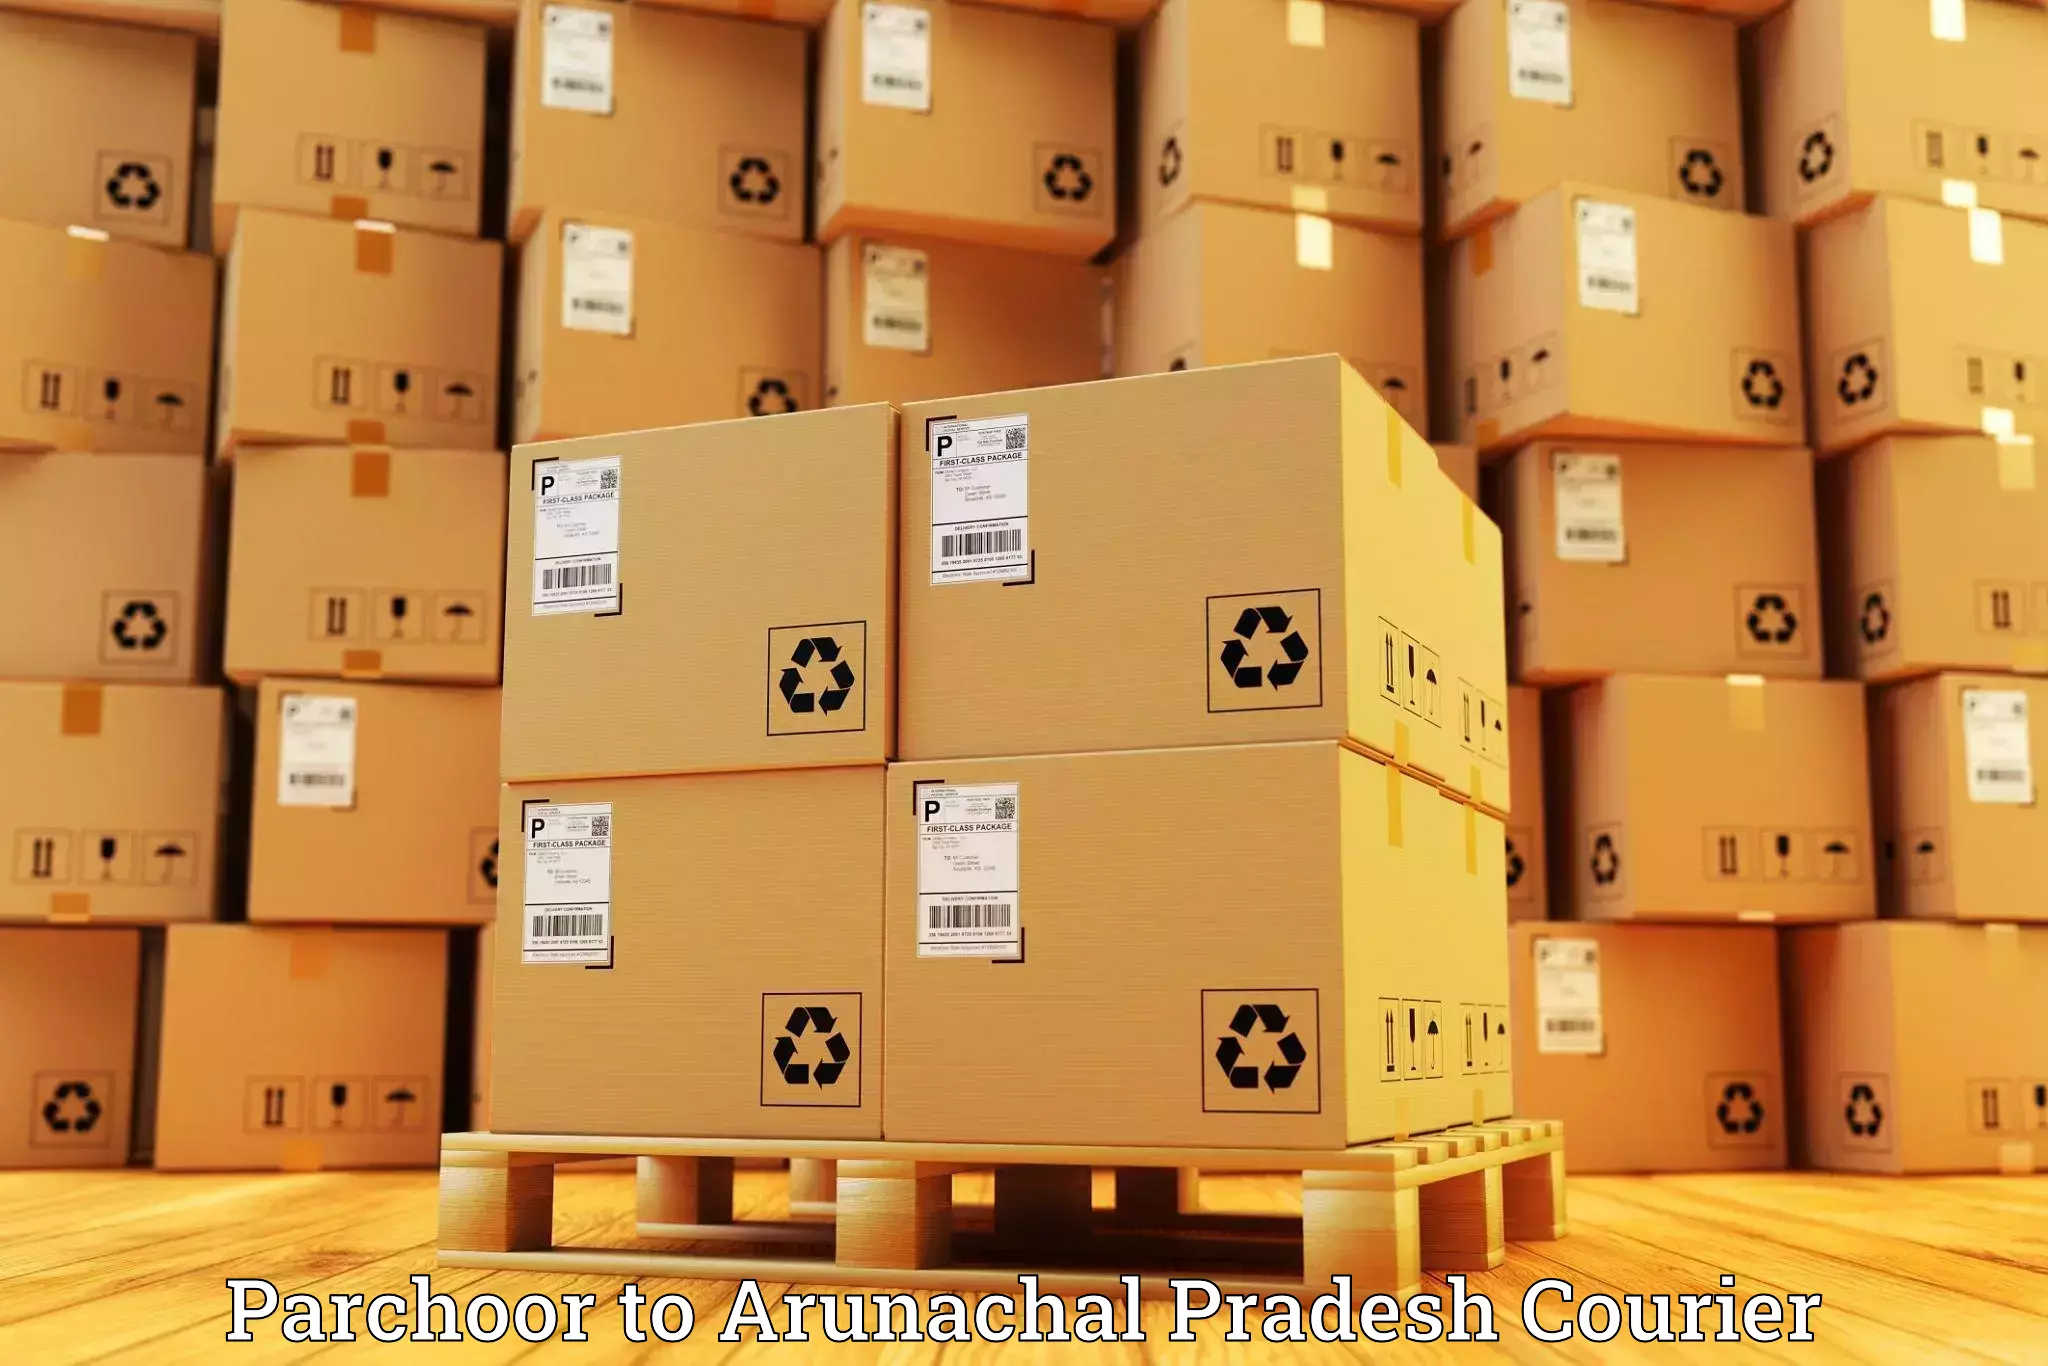 Express mail solutions Parchoor to Arunachal Pradesh